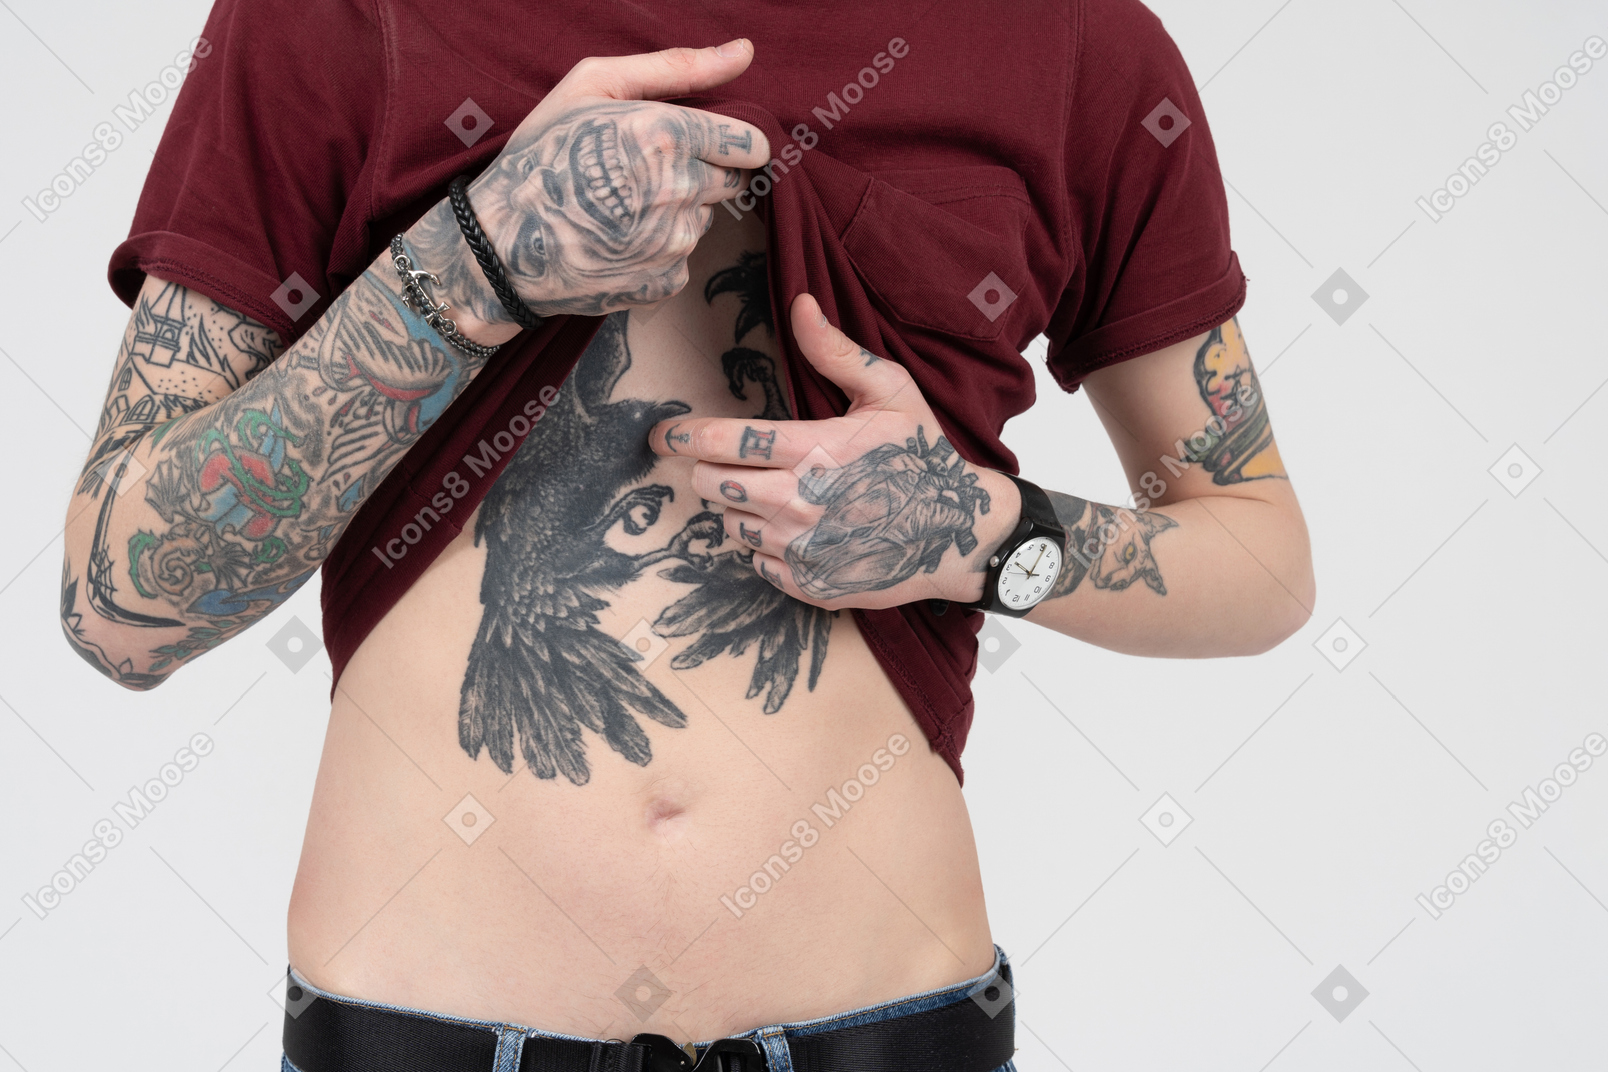 Parte superior do corpo masculino com tatuagens